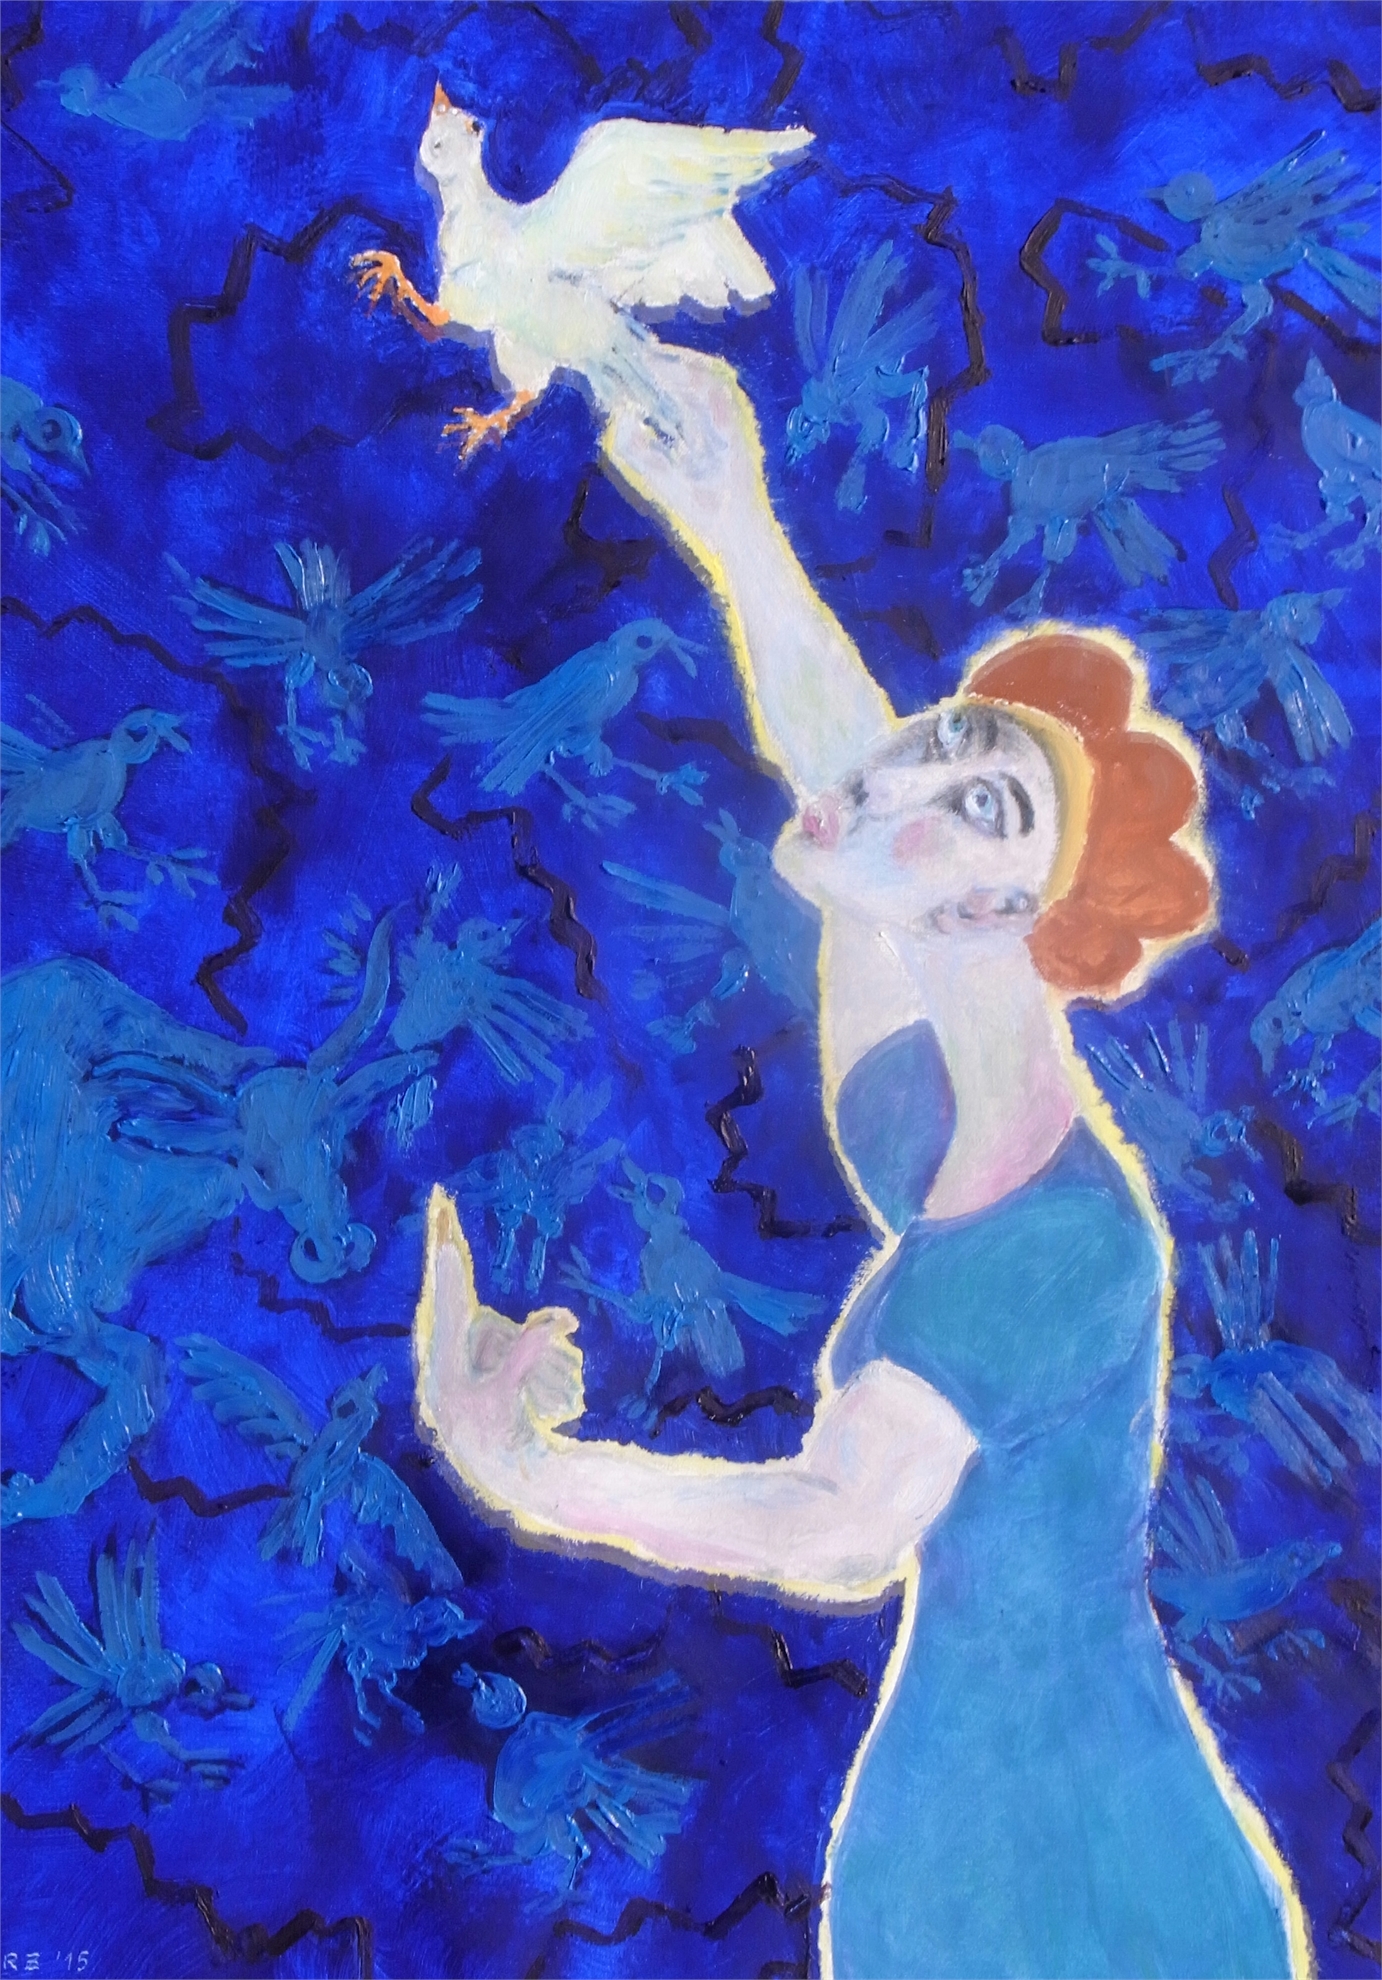 Taube in der Hand, 2015, Oel auf Cotton, 60x80cm